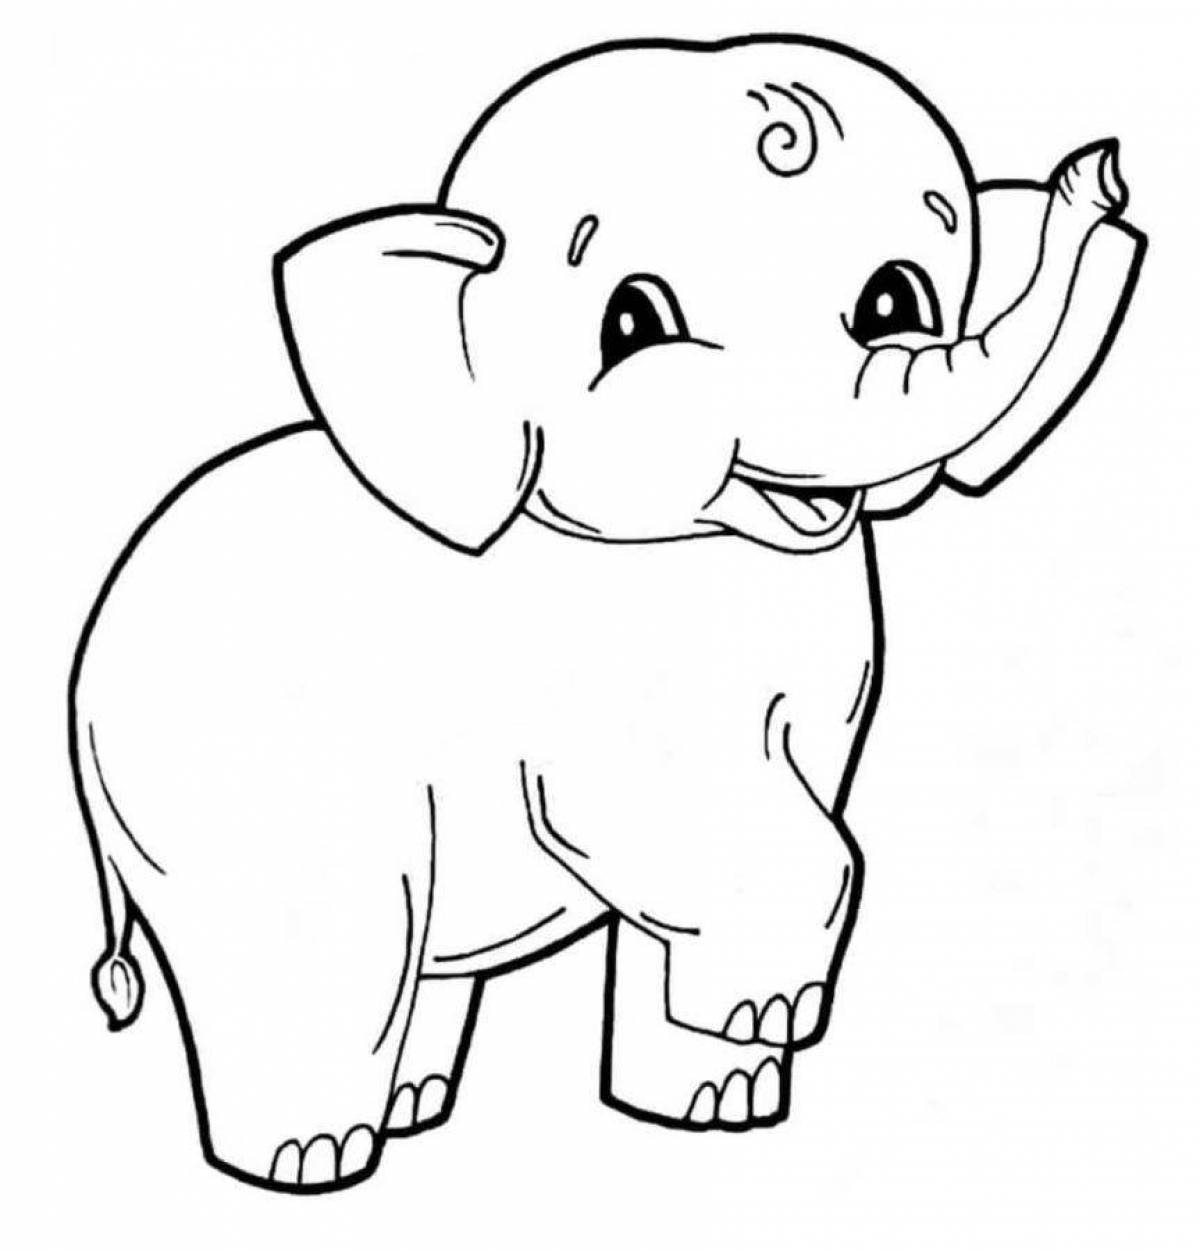 Big elephant coloring book